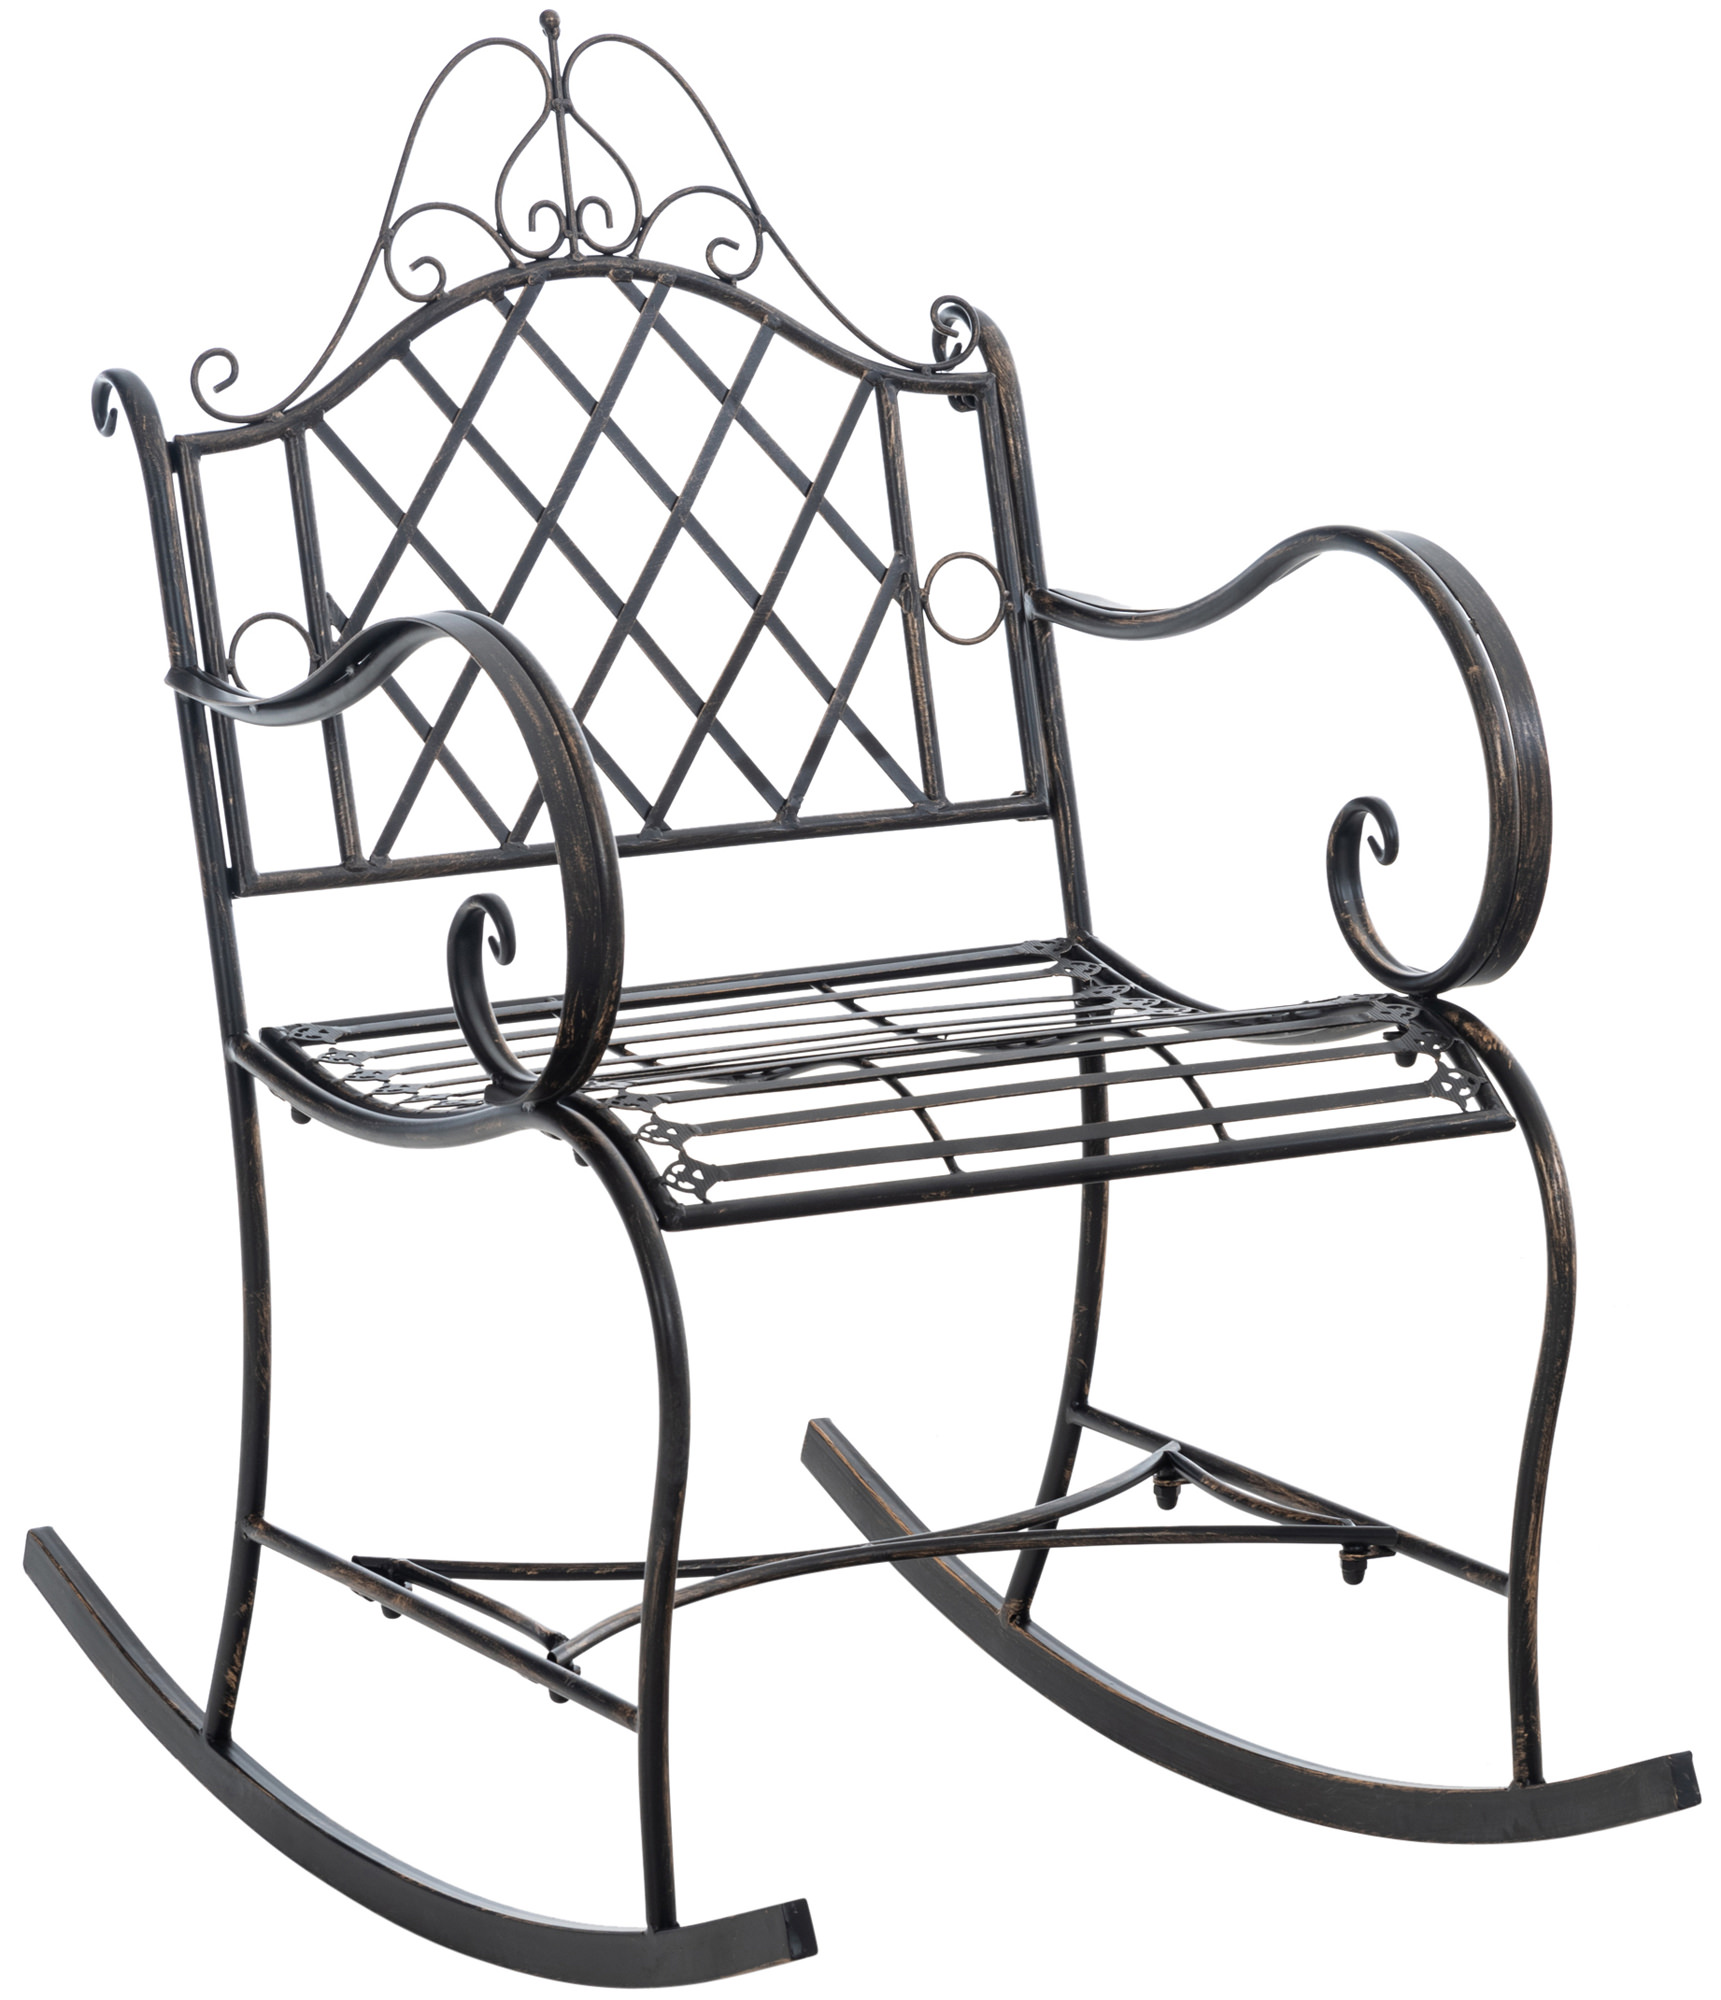 Chaise à bascule d'extérieur en métal Bronze